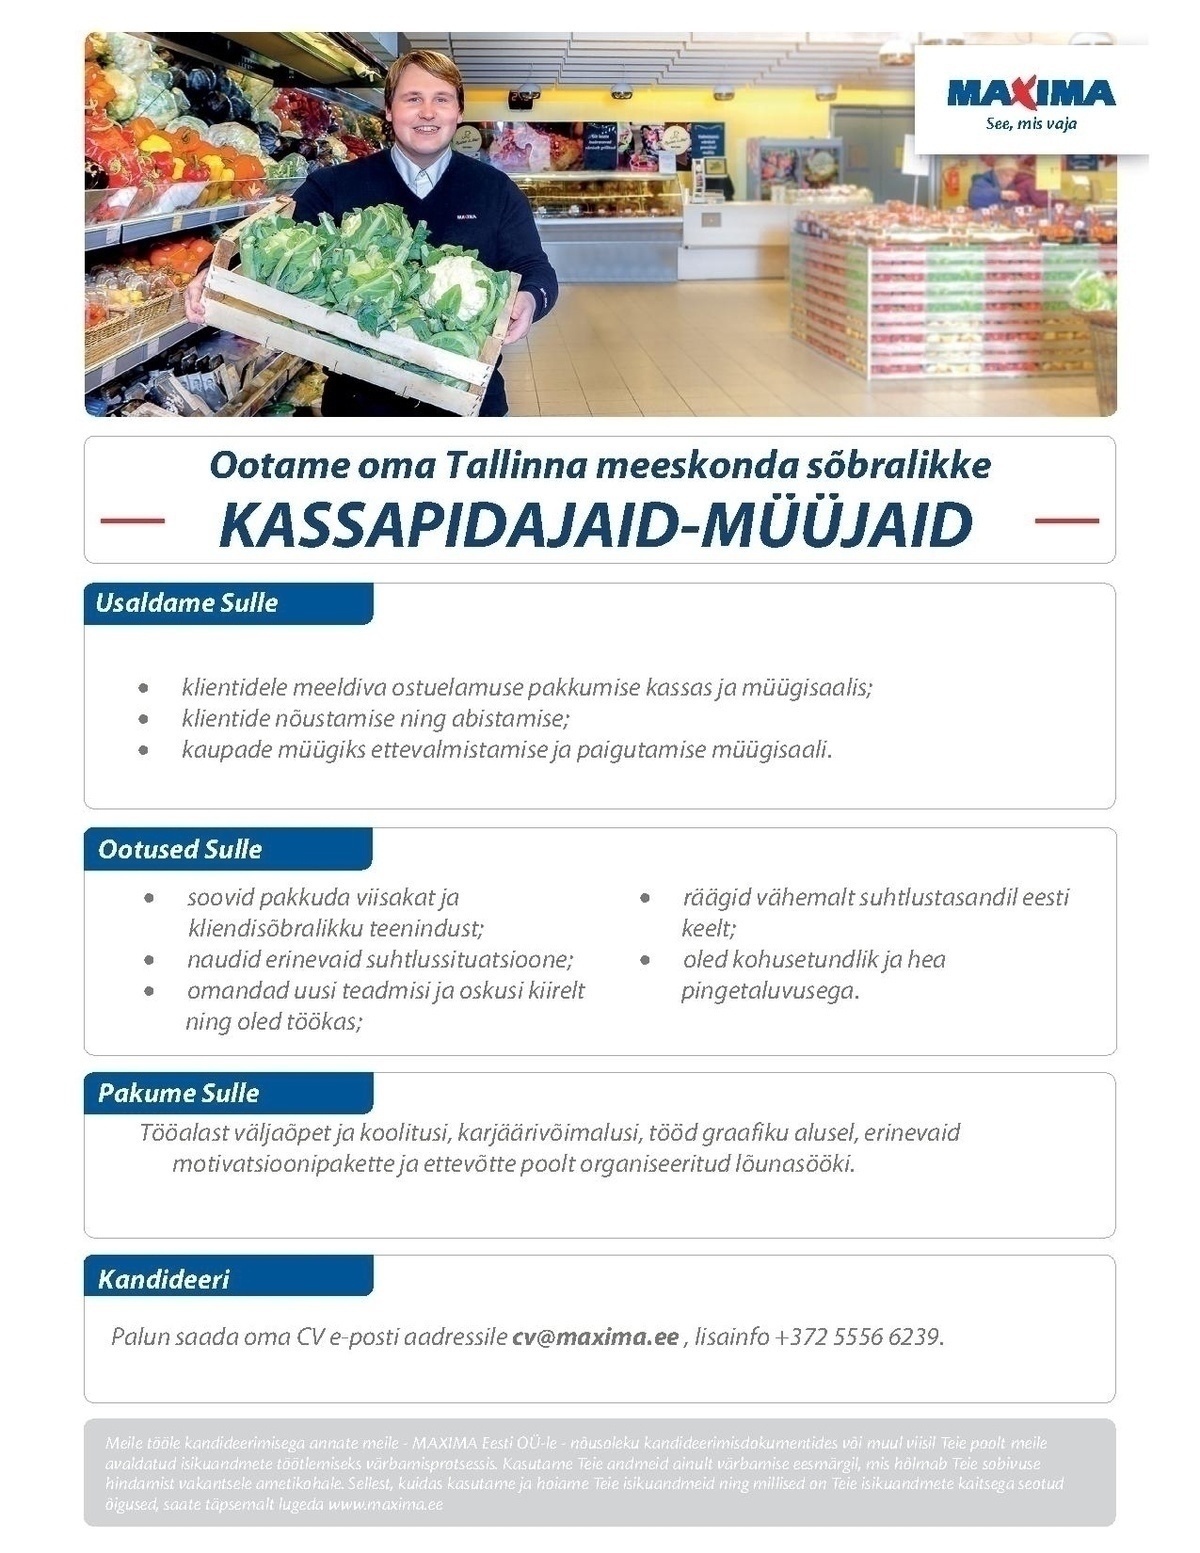 Maxima Eesti OÜ Kassapidaja-müüja Lasnamäe Maxima (Pallasti 18)